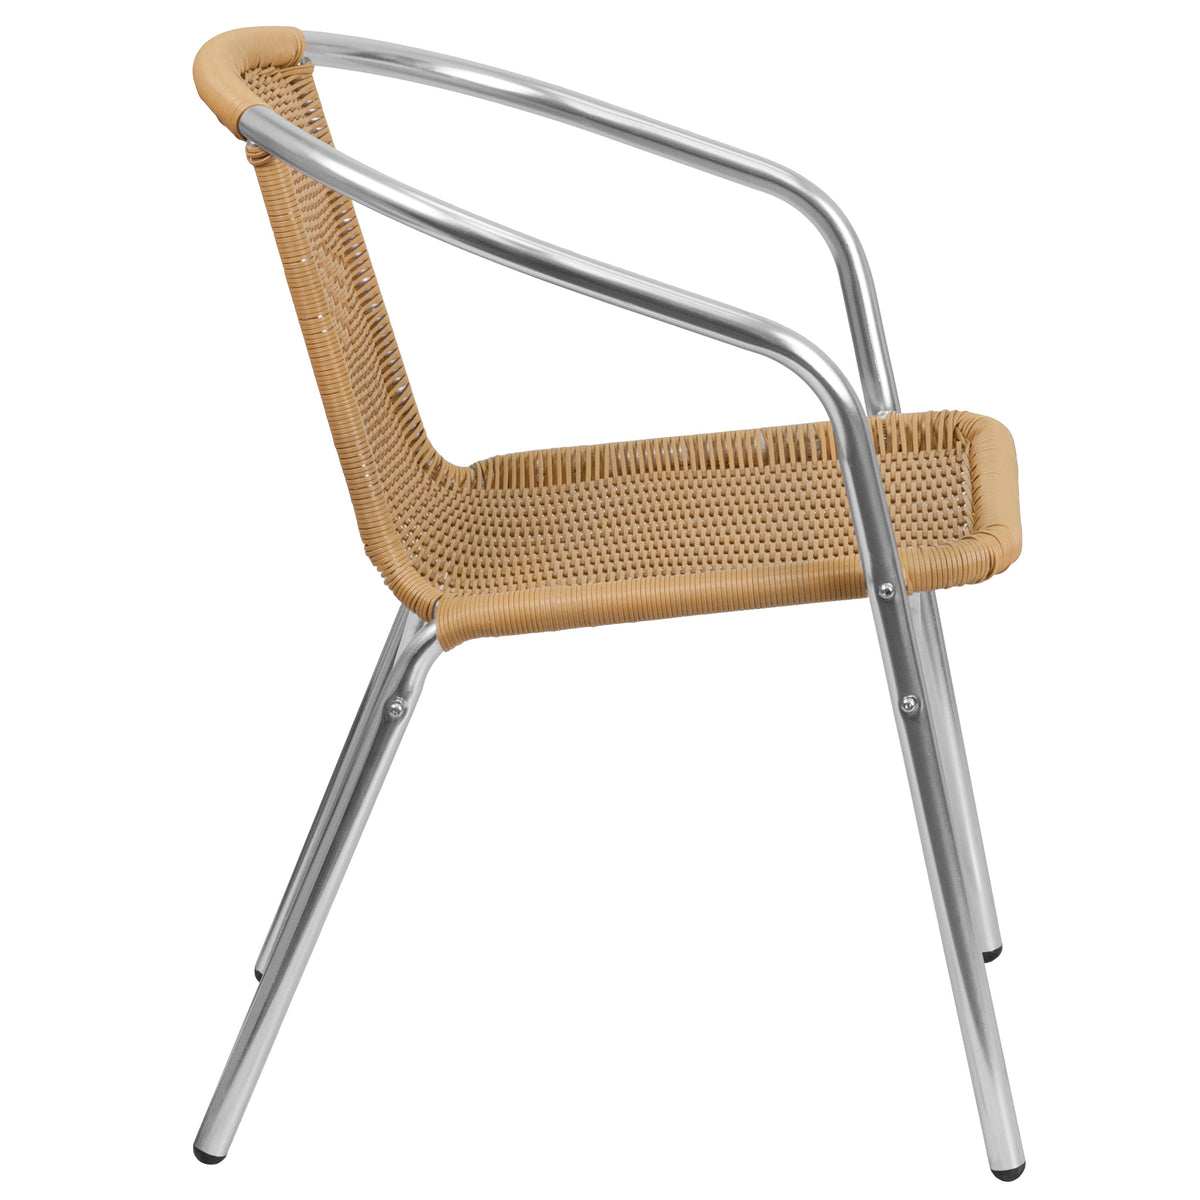 Aluminum and Beige |#| Commercial Aluminum and Beige Rattan Indoor-Outdoor Restaurant Stack Chair